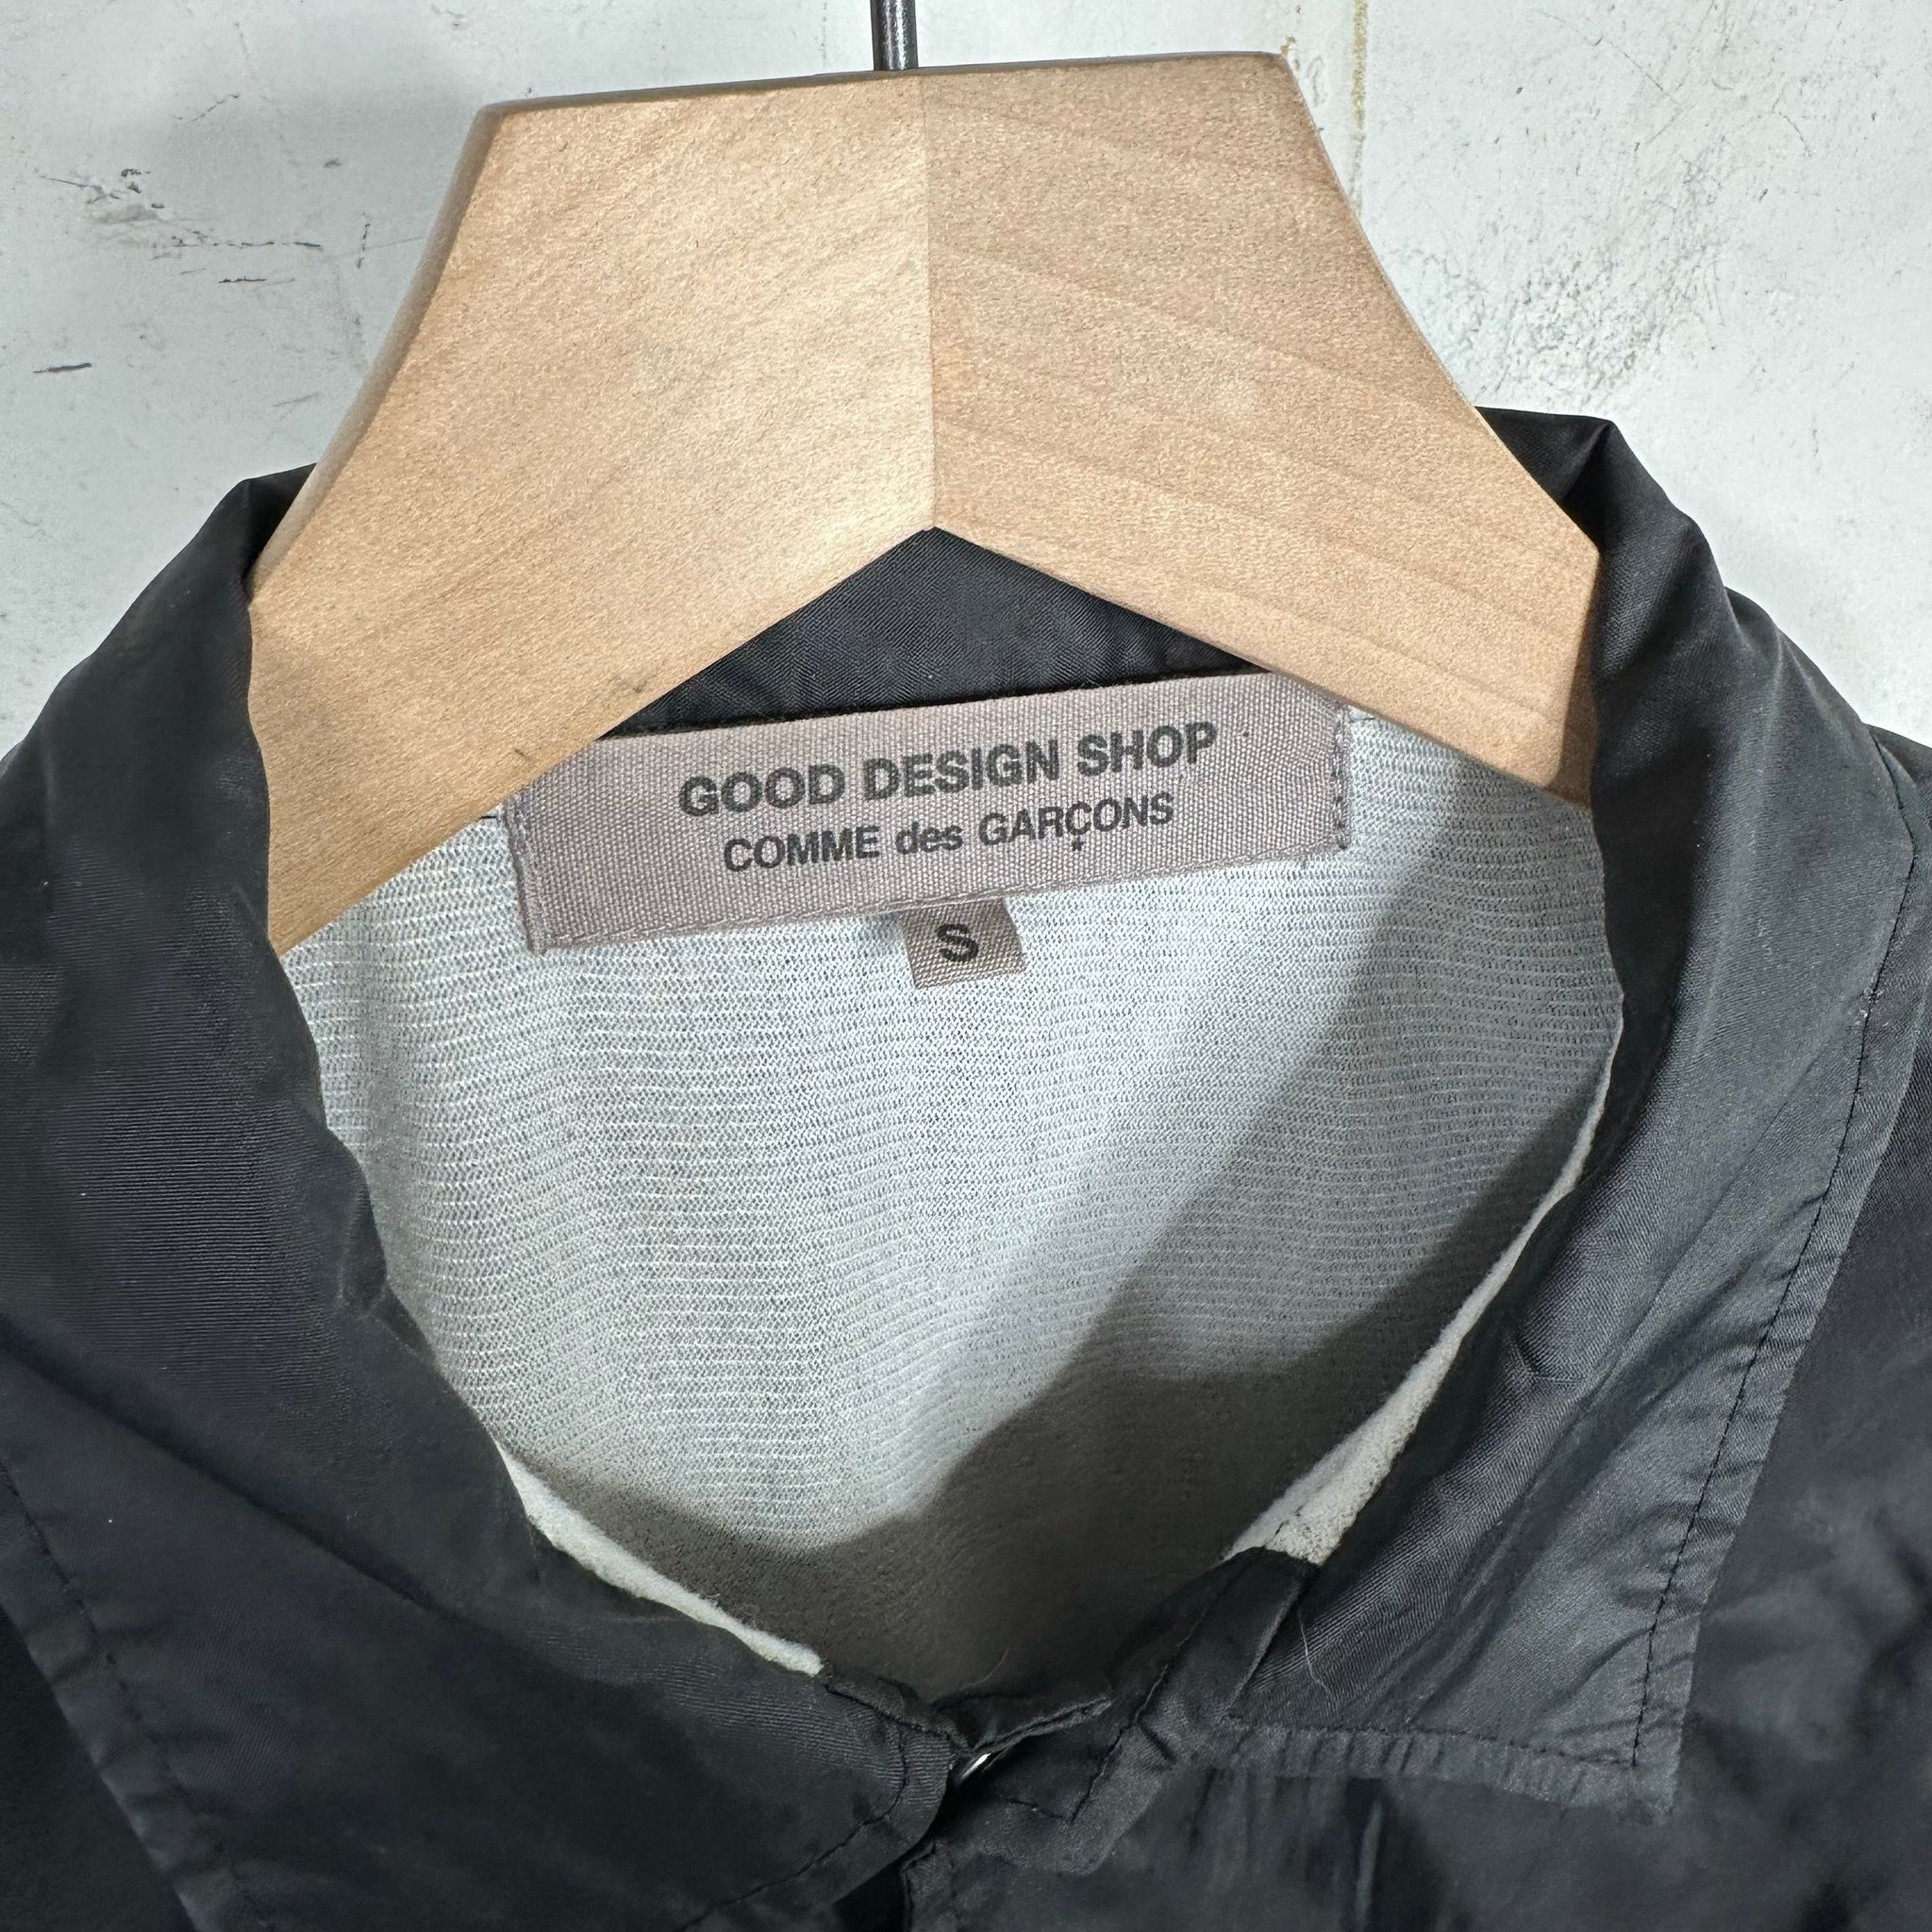 Comme Des Garçons Design Shop Coaches Jacket